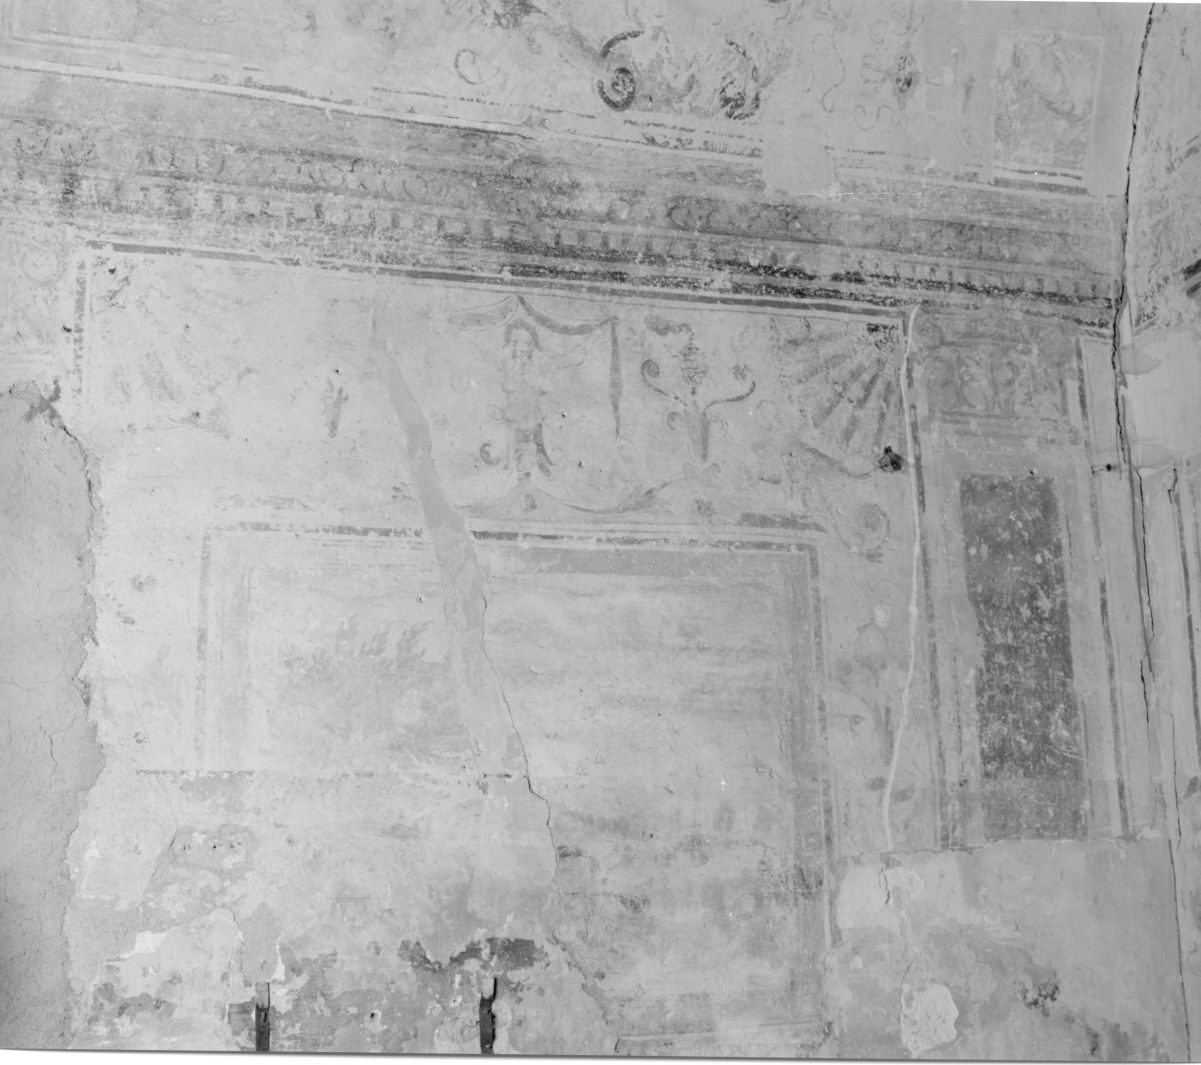 motivi decorativi a grottesche (decorazione pittorica, elemento d'insieme) - ambito campano (secc. XVI/ XVII)